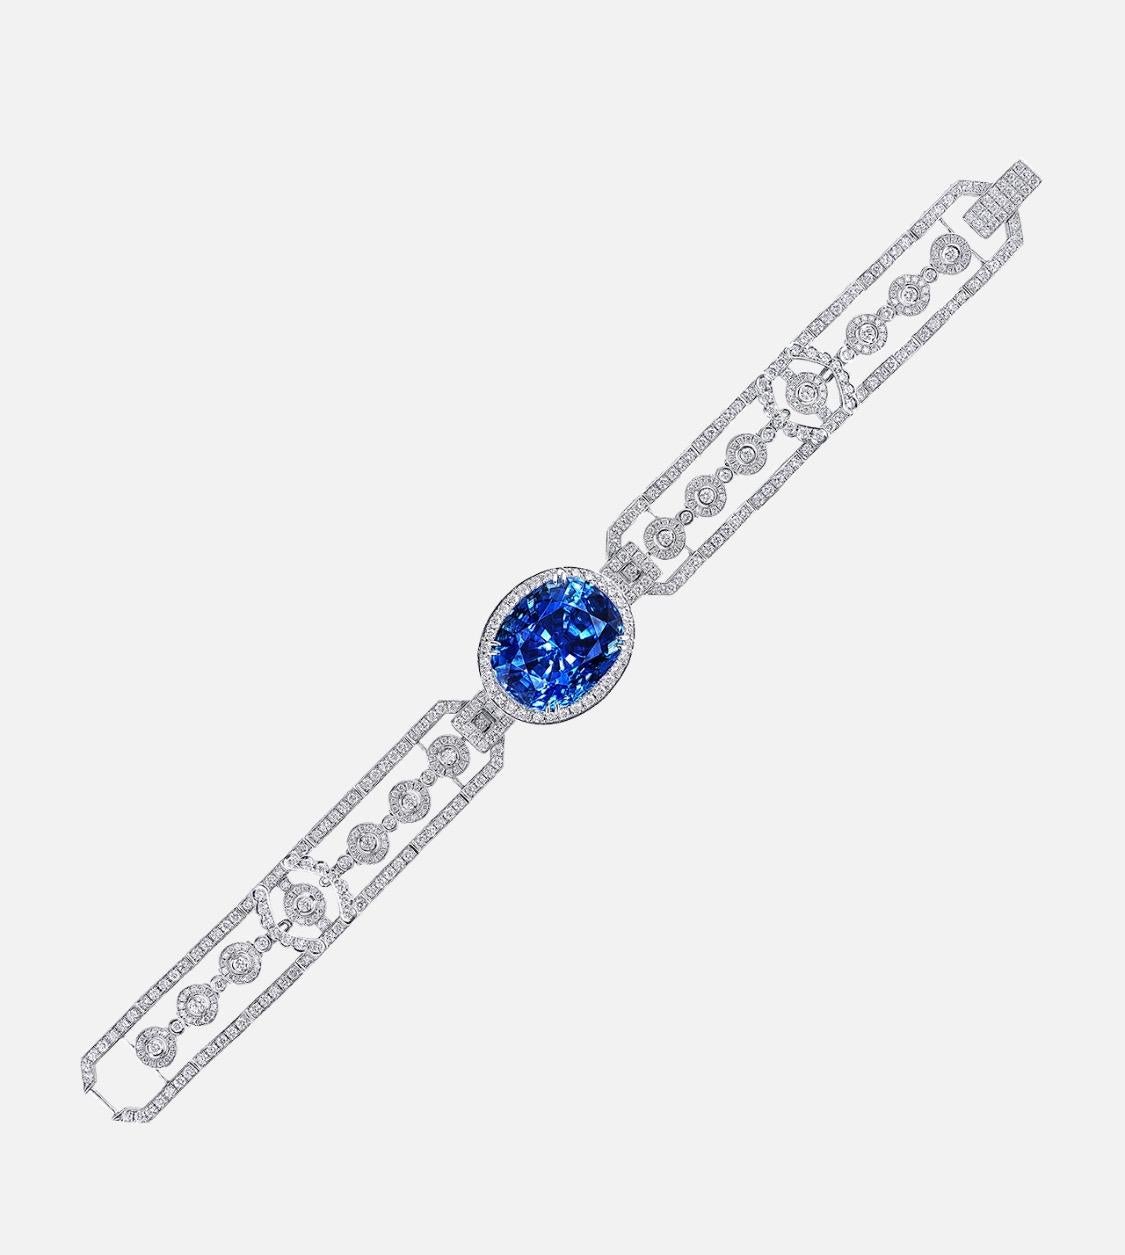 Aus dem Museumsgewölbe bei Emilio Jewelry in New York,

In der Mitte dieses Armbands sitzt ein prächtiger, unbehandelter, natürlicher, lebhaft blauer Saphir. Für weitere Informationen oder zusätzliche Bilder fragen Sie bitte an. 